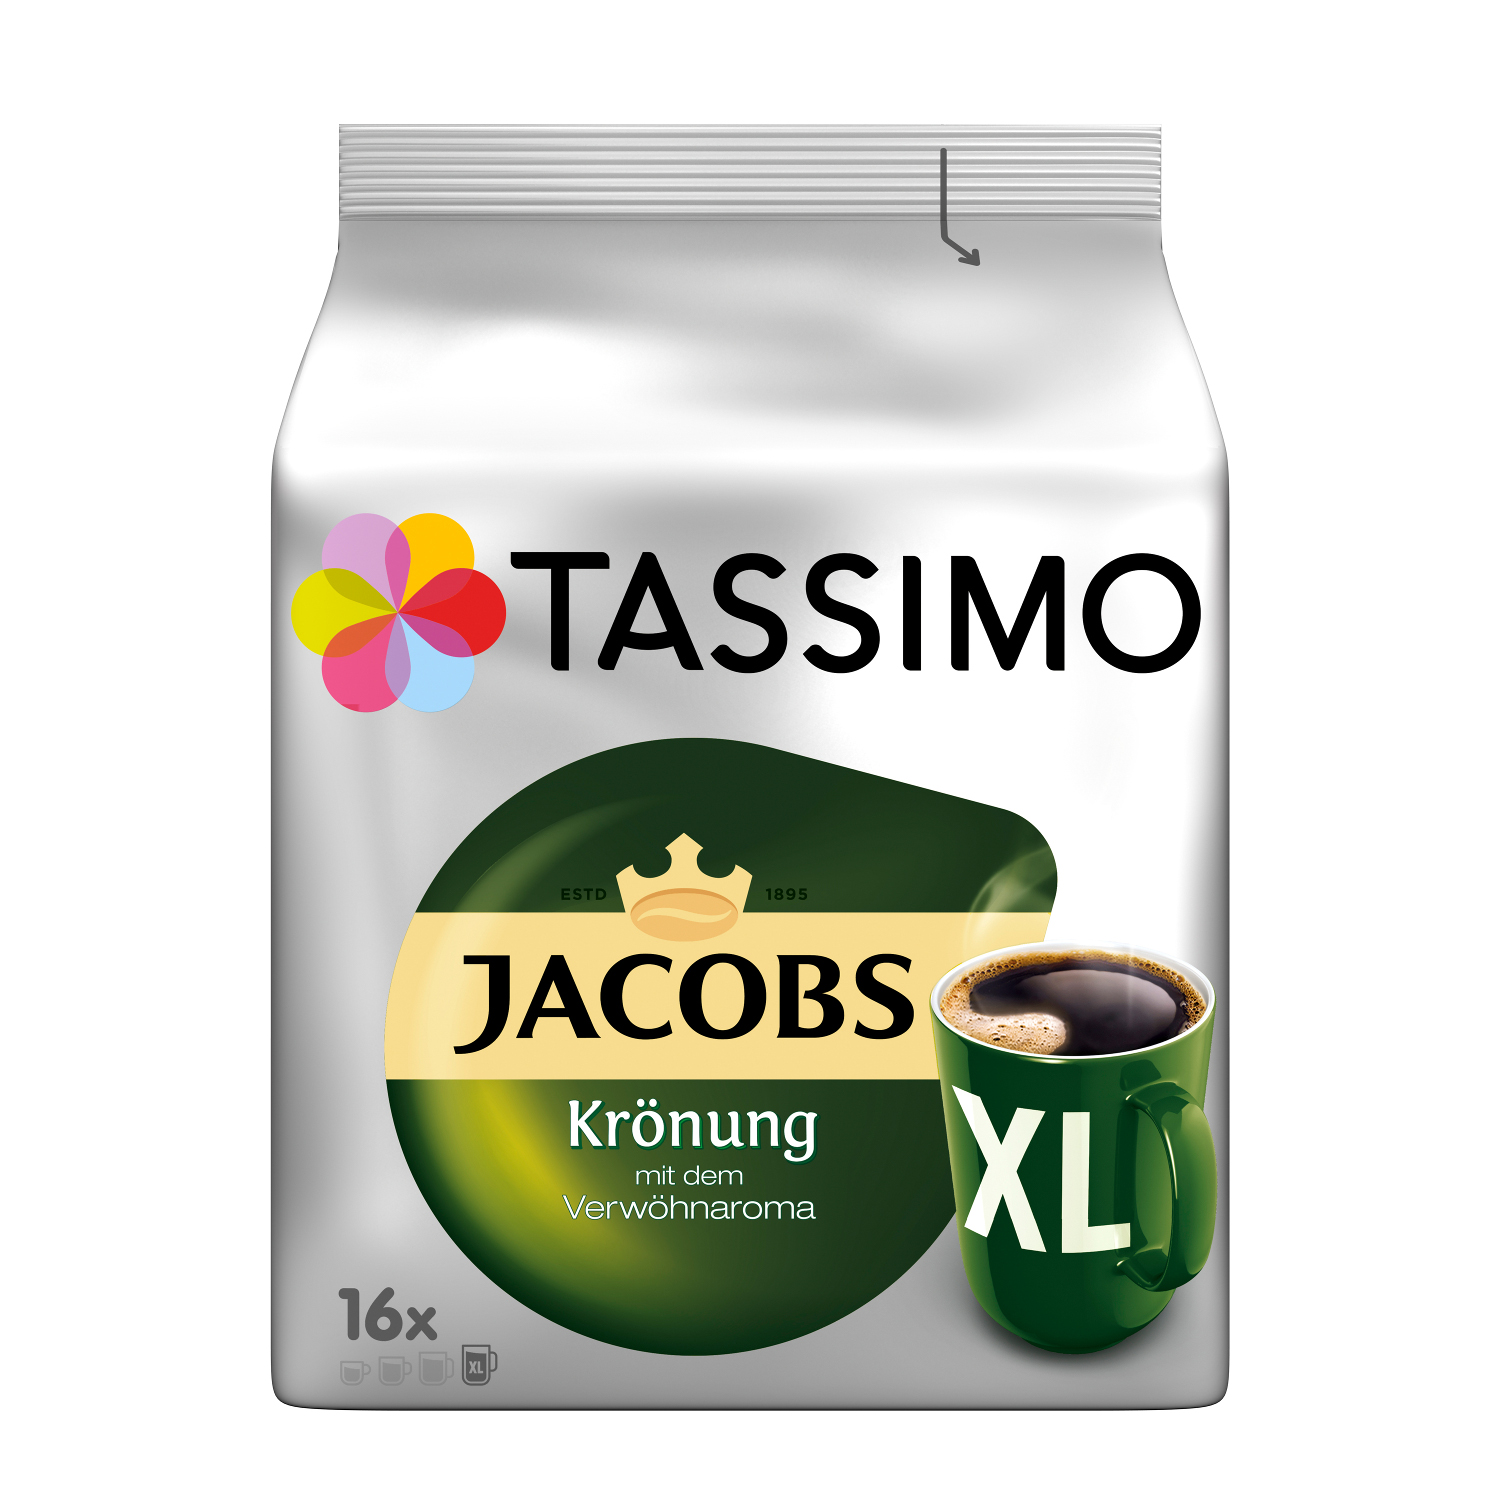 5 Krönung Vielfaltspaket (T-Disc Sorten Becherportionen Intenso TASSIMO Crema Café XL Morning System)) Kaffeekapseln Maschine Mild (Tassimo